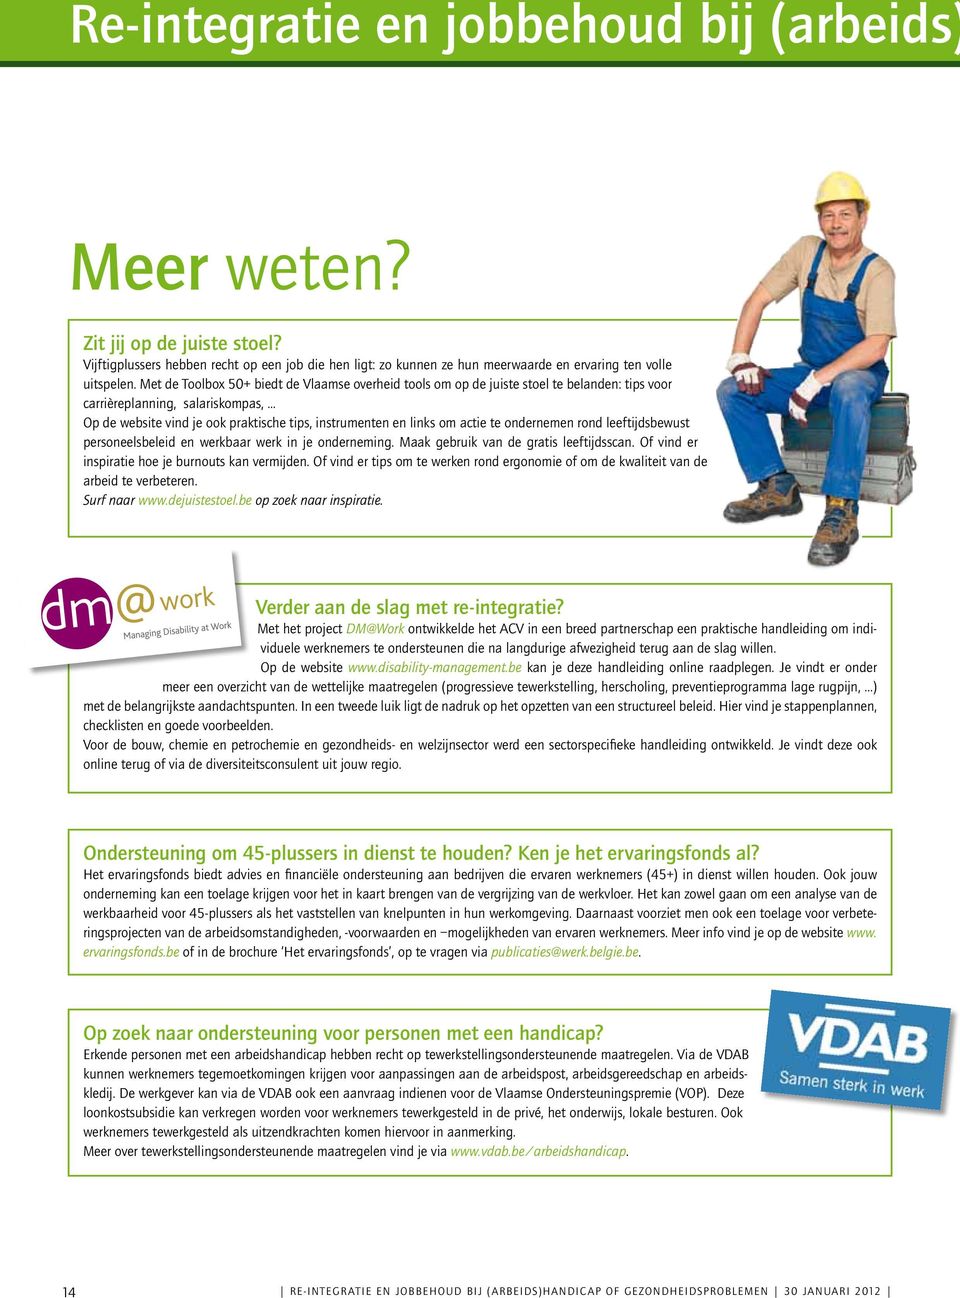 Met de Toolbox 50+ biedt de Vlaamse overheid tools om op de juiste stoel te belanden: tips voor carrièreplanning, salariskompas,.